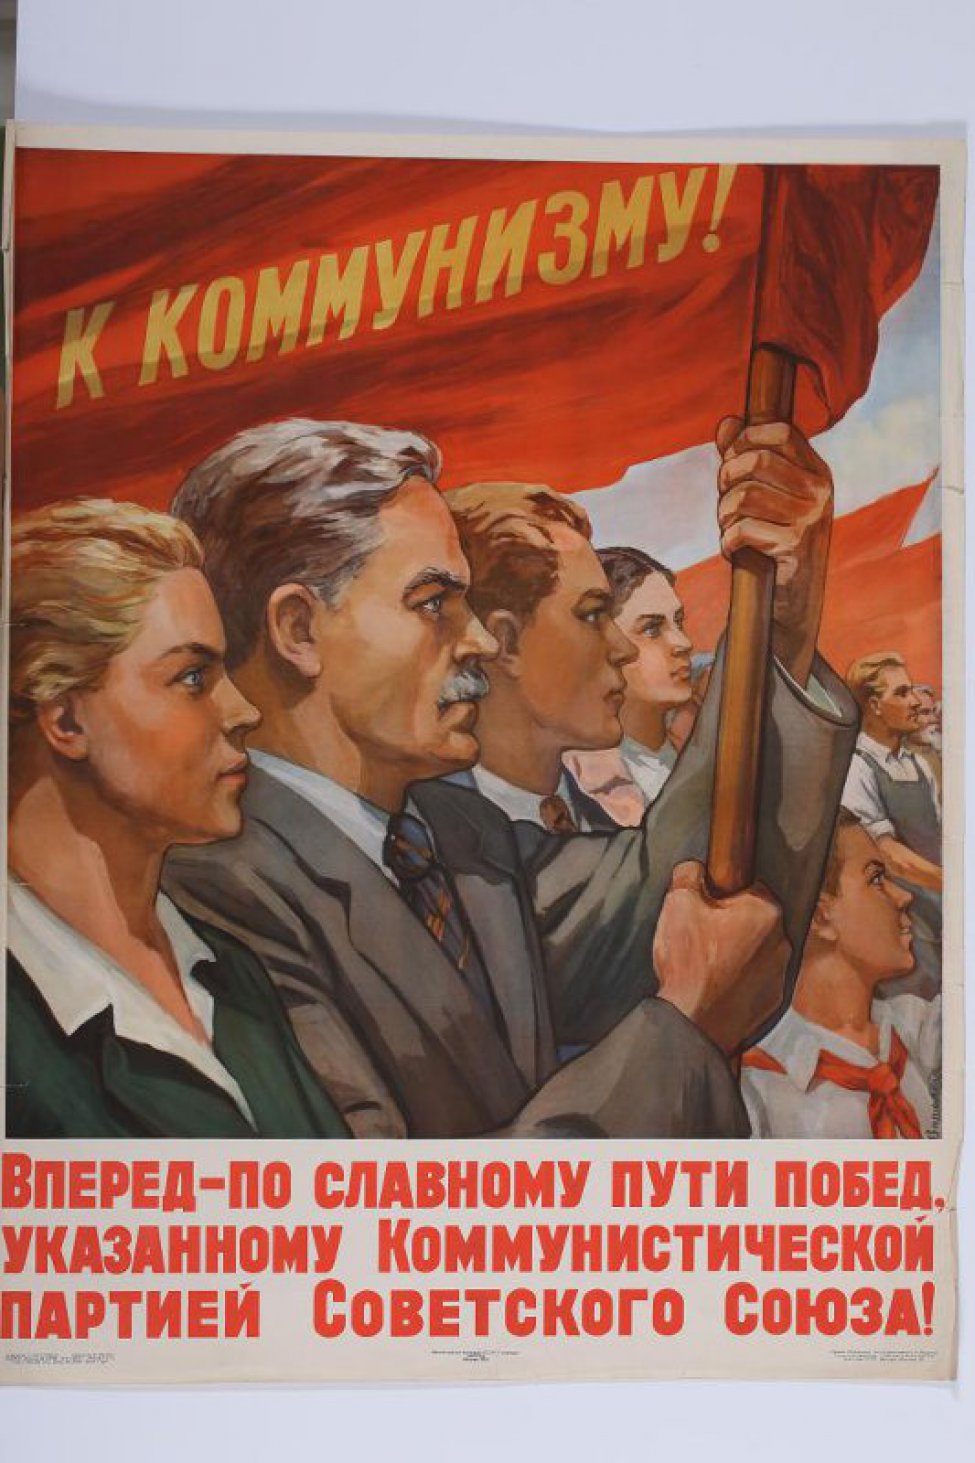 Изображены в профиль вправо идущие в ряд: молодая женщина, мужчина с седыми волосами, молодой человек и девушка. Над ними знамя с надписью:    " К коммунизму !"